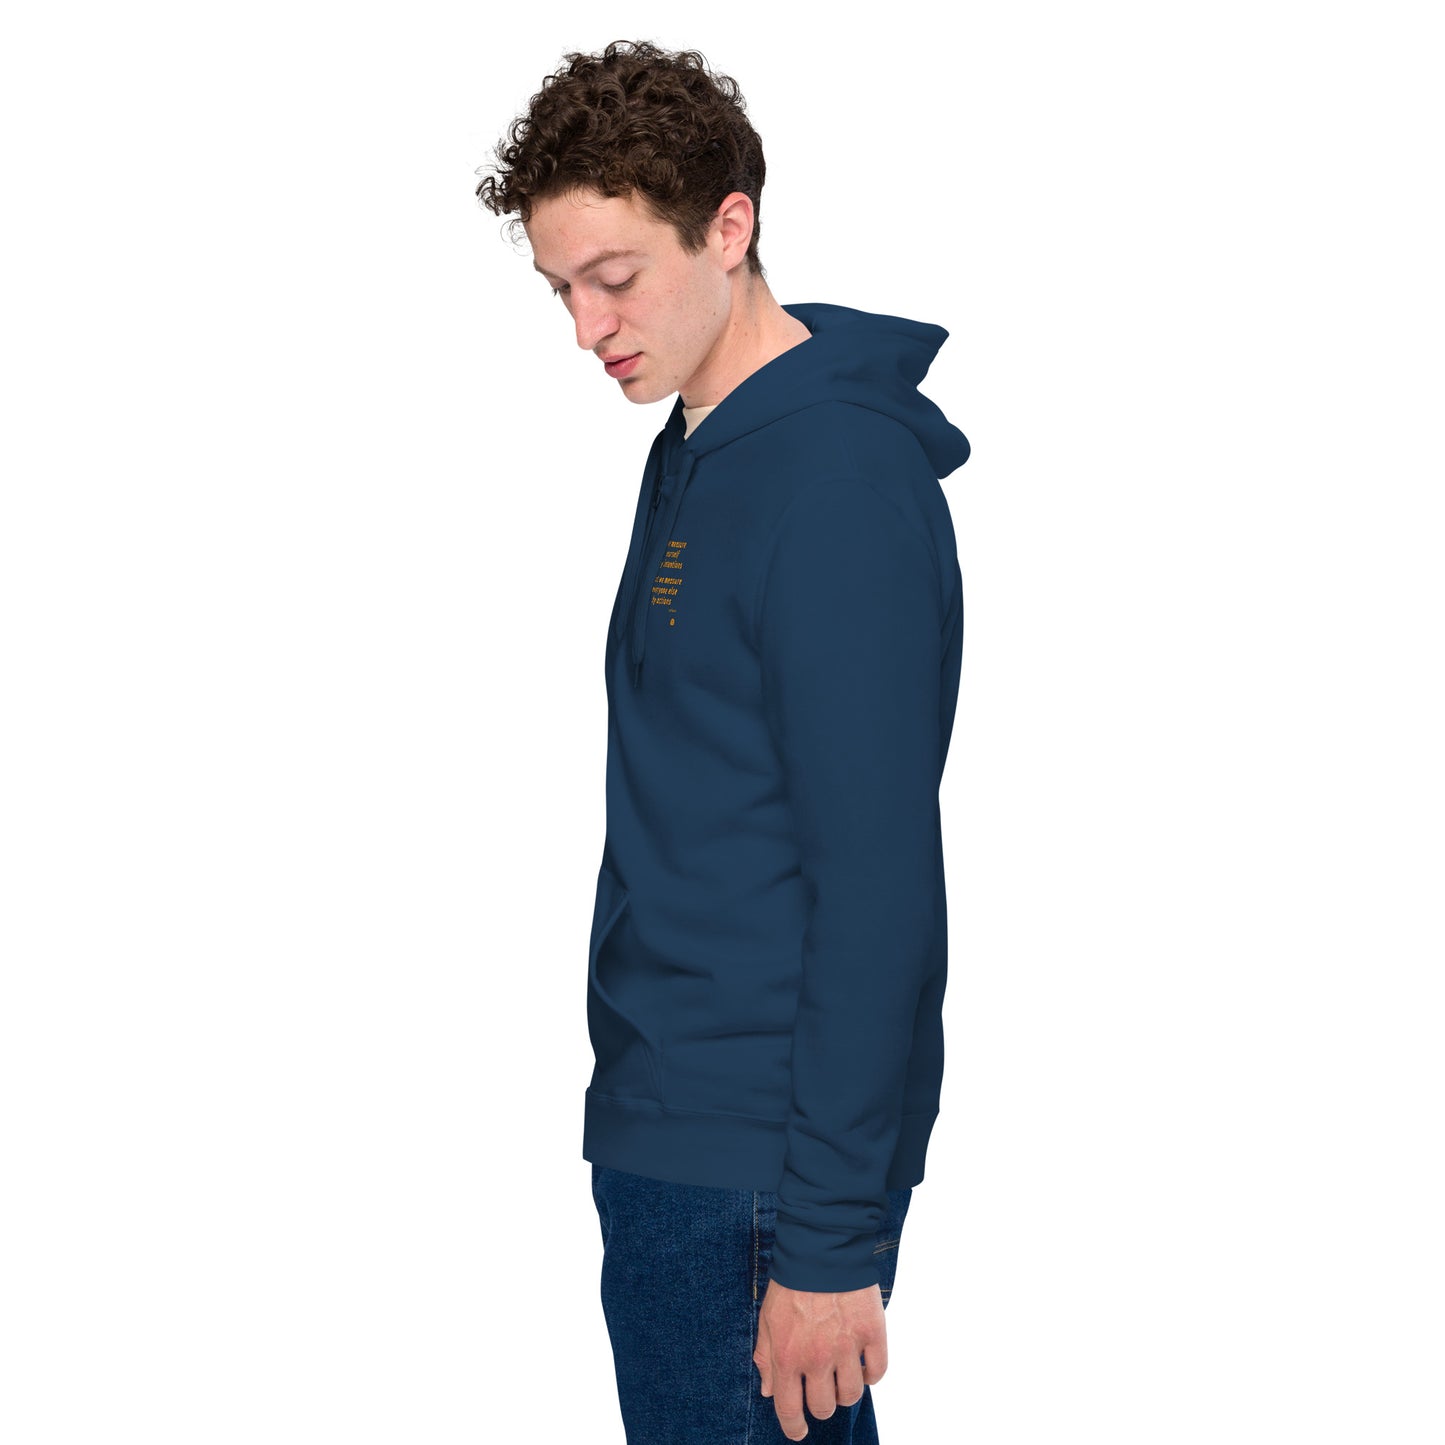 Unisex basic zip hoodie "Measure_sm"